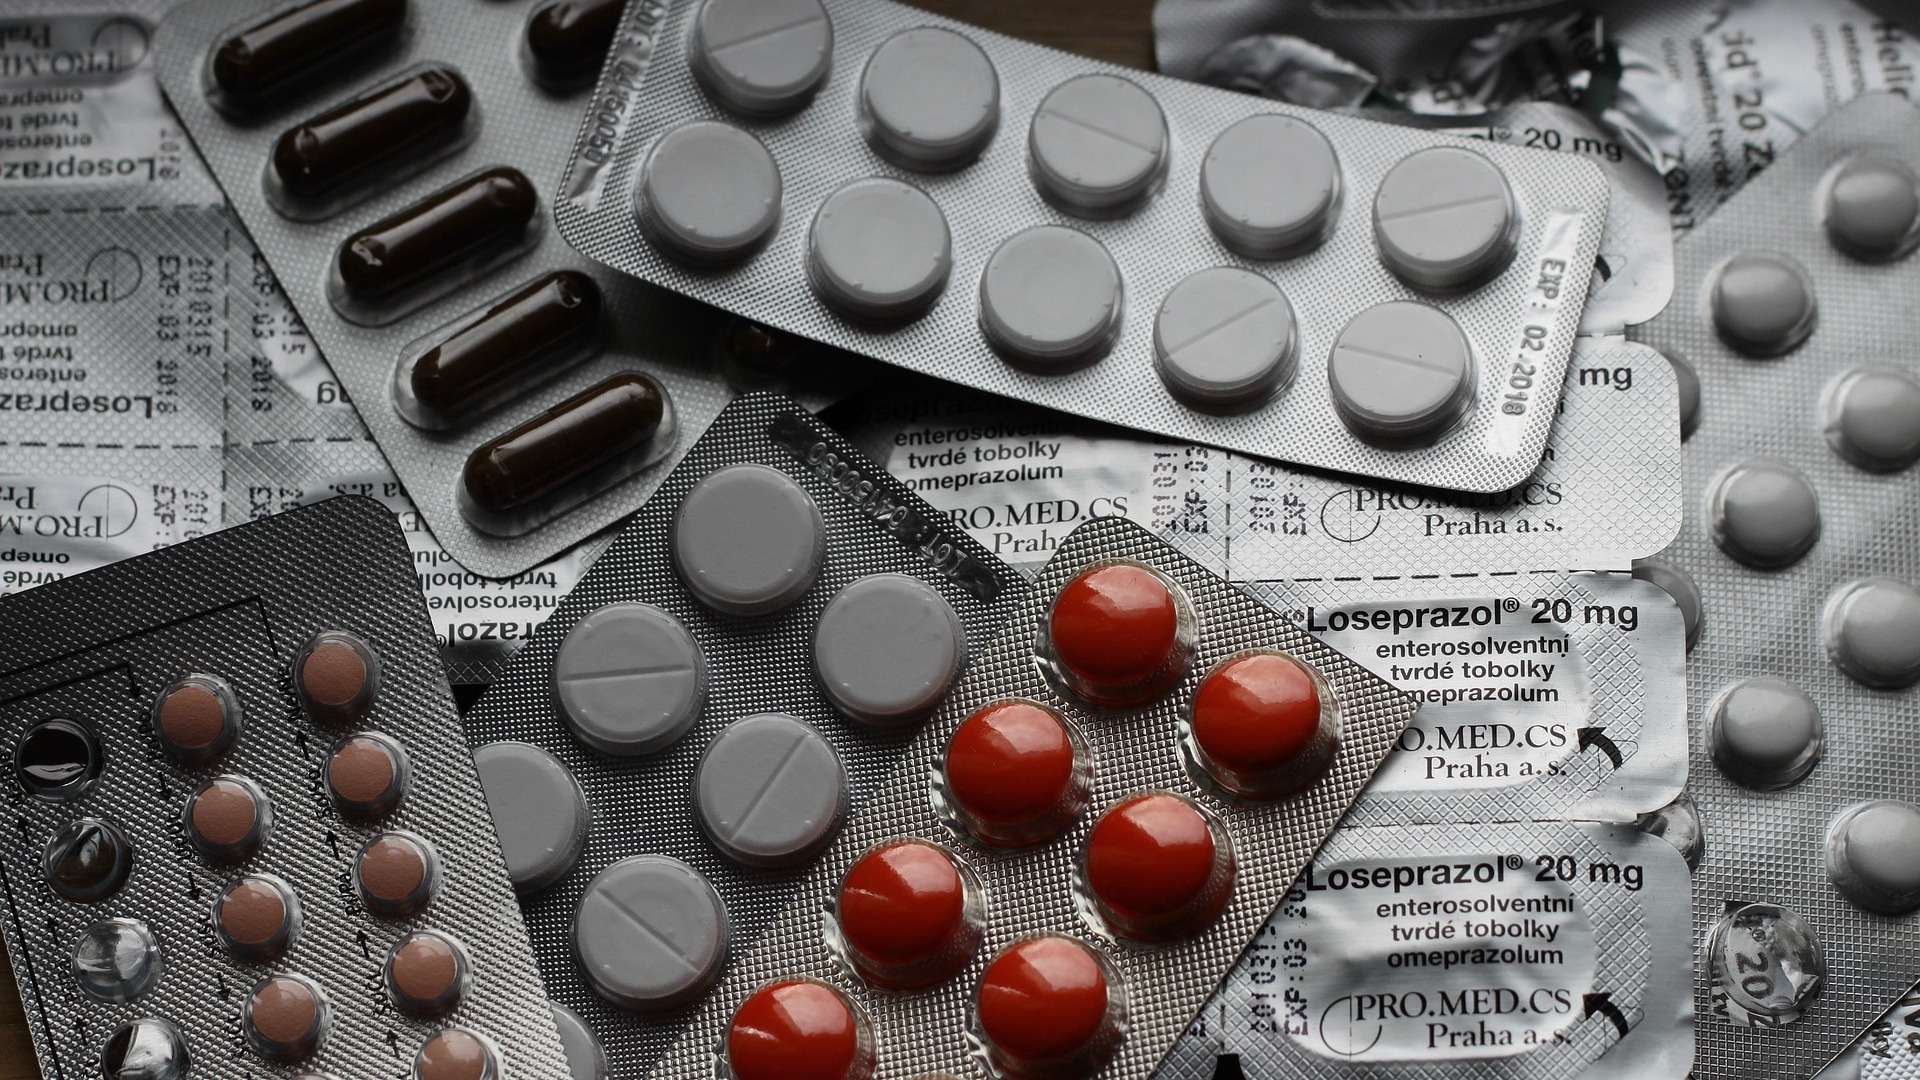 В России зарегистрировали препарат для борьбы с резистентностью к антибиотикам